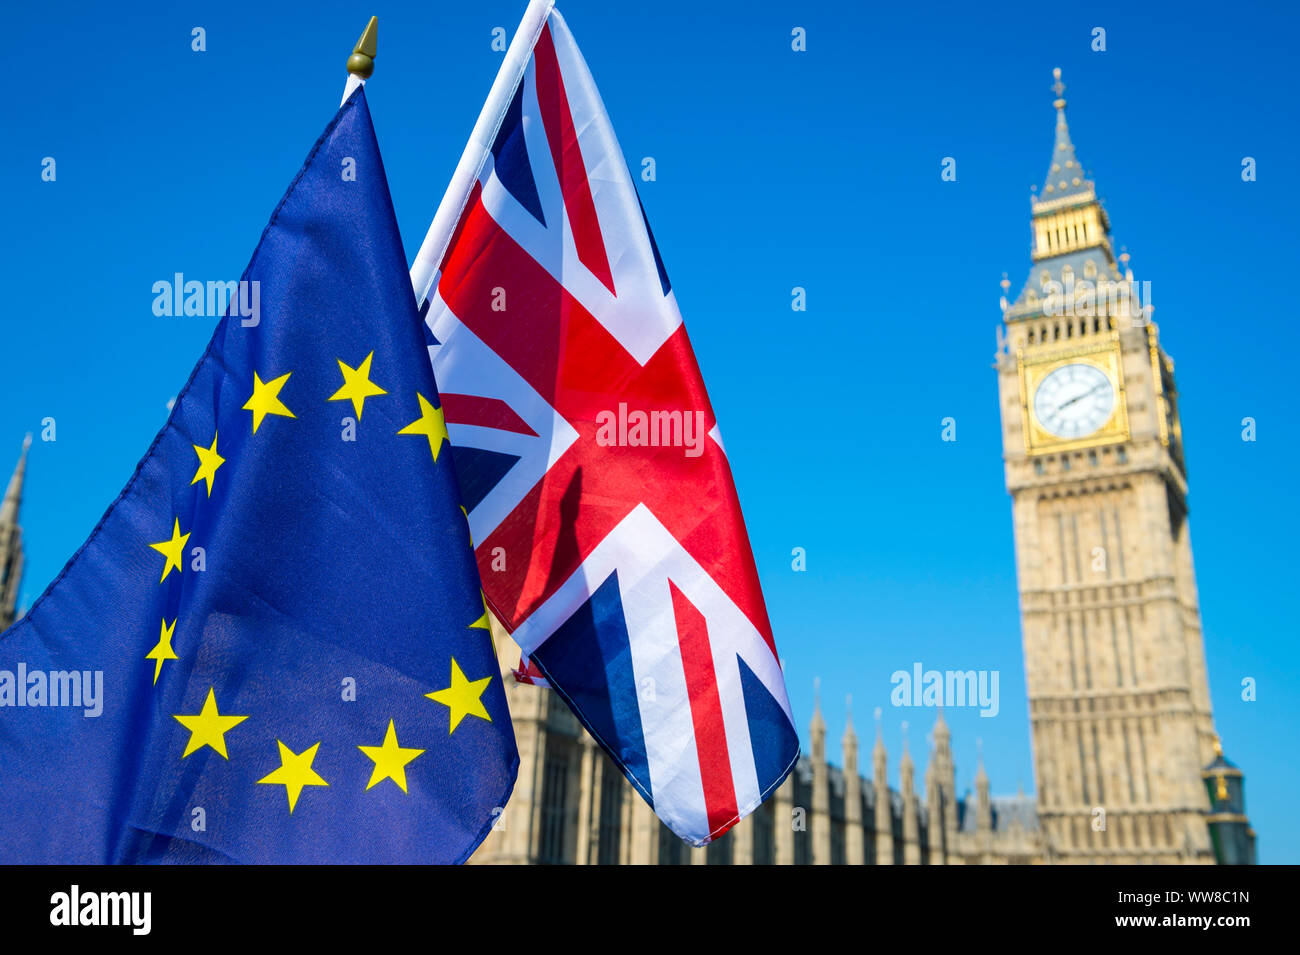 Die europäische Union und den britischen Union Jack Flagge hängen an den Big Ben und die Houses of Parliament in Westminster Palace, London, in der Vorbereitung für Brexit Stockfoto